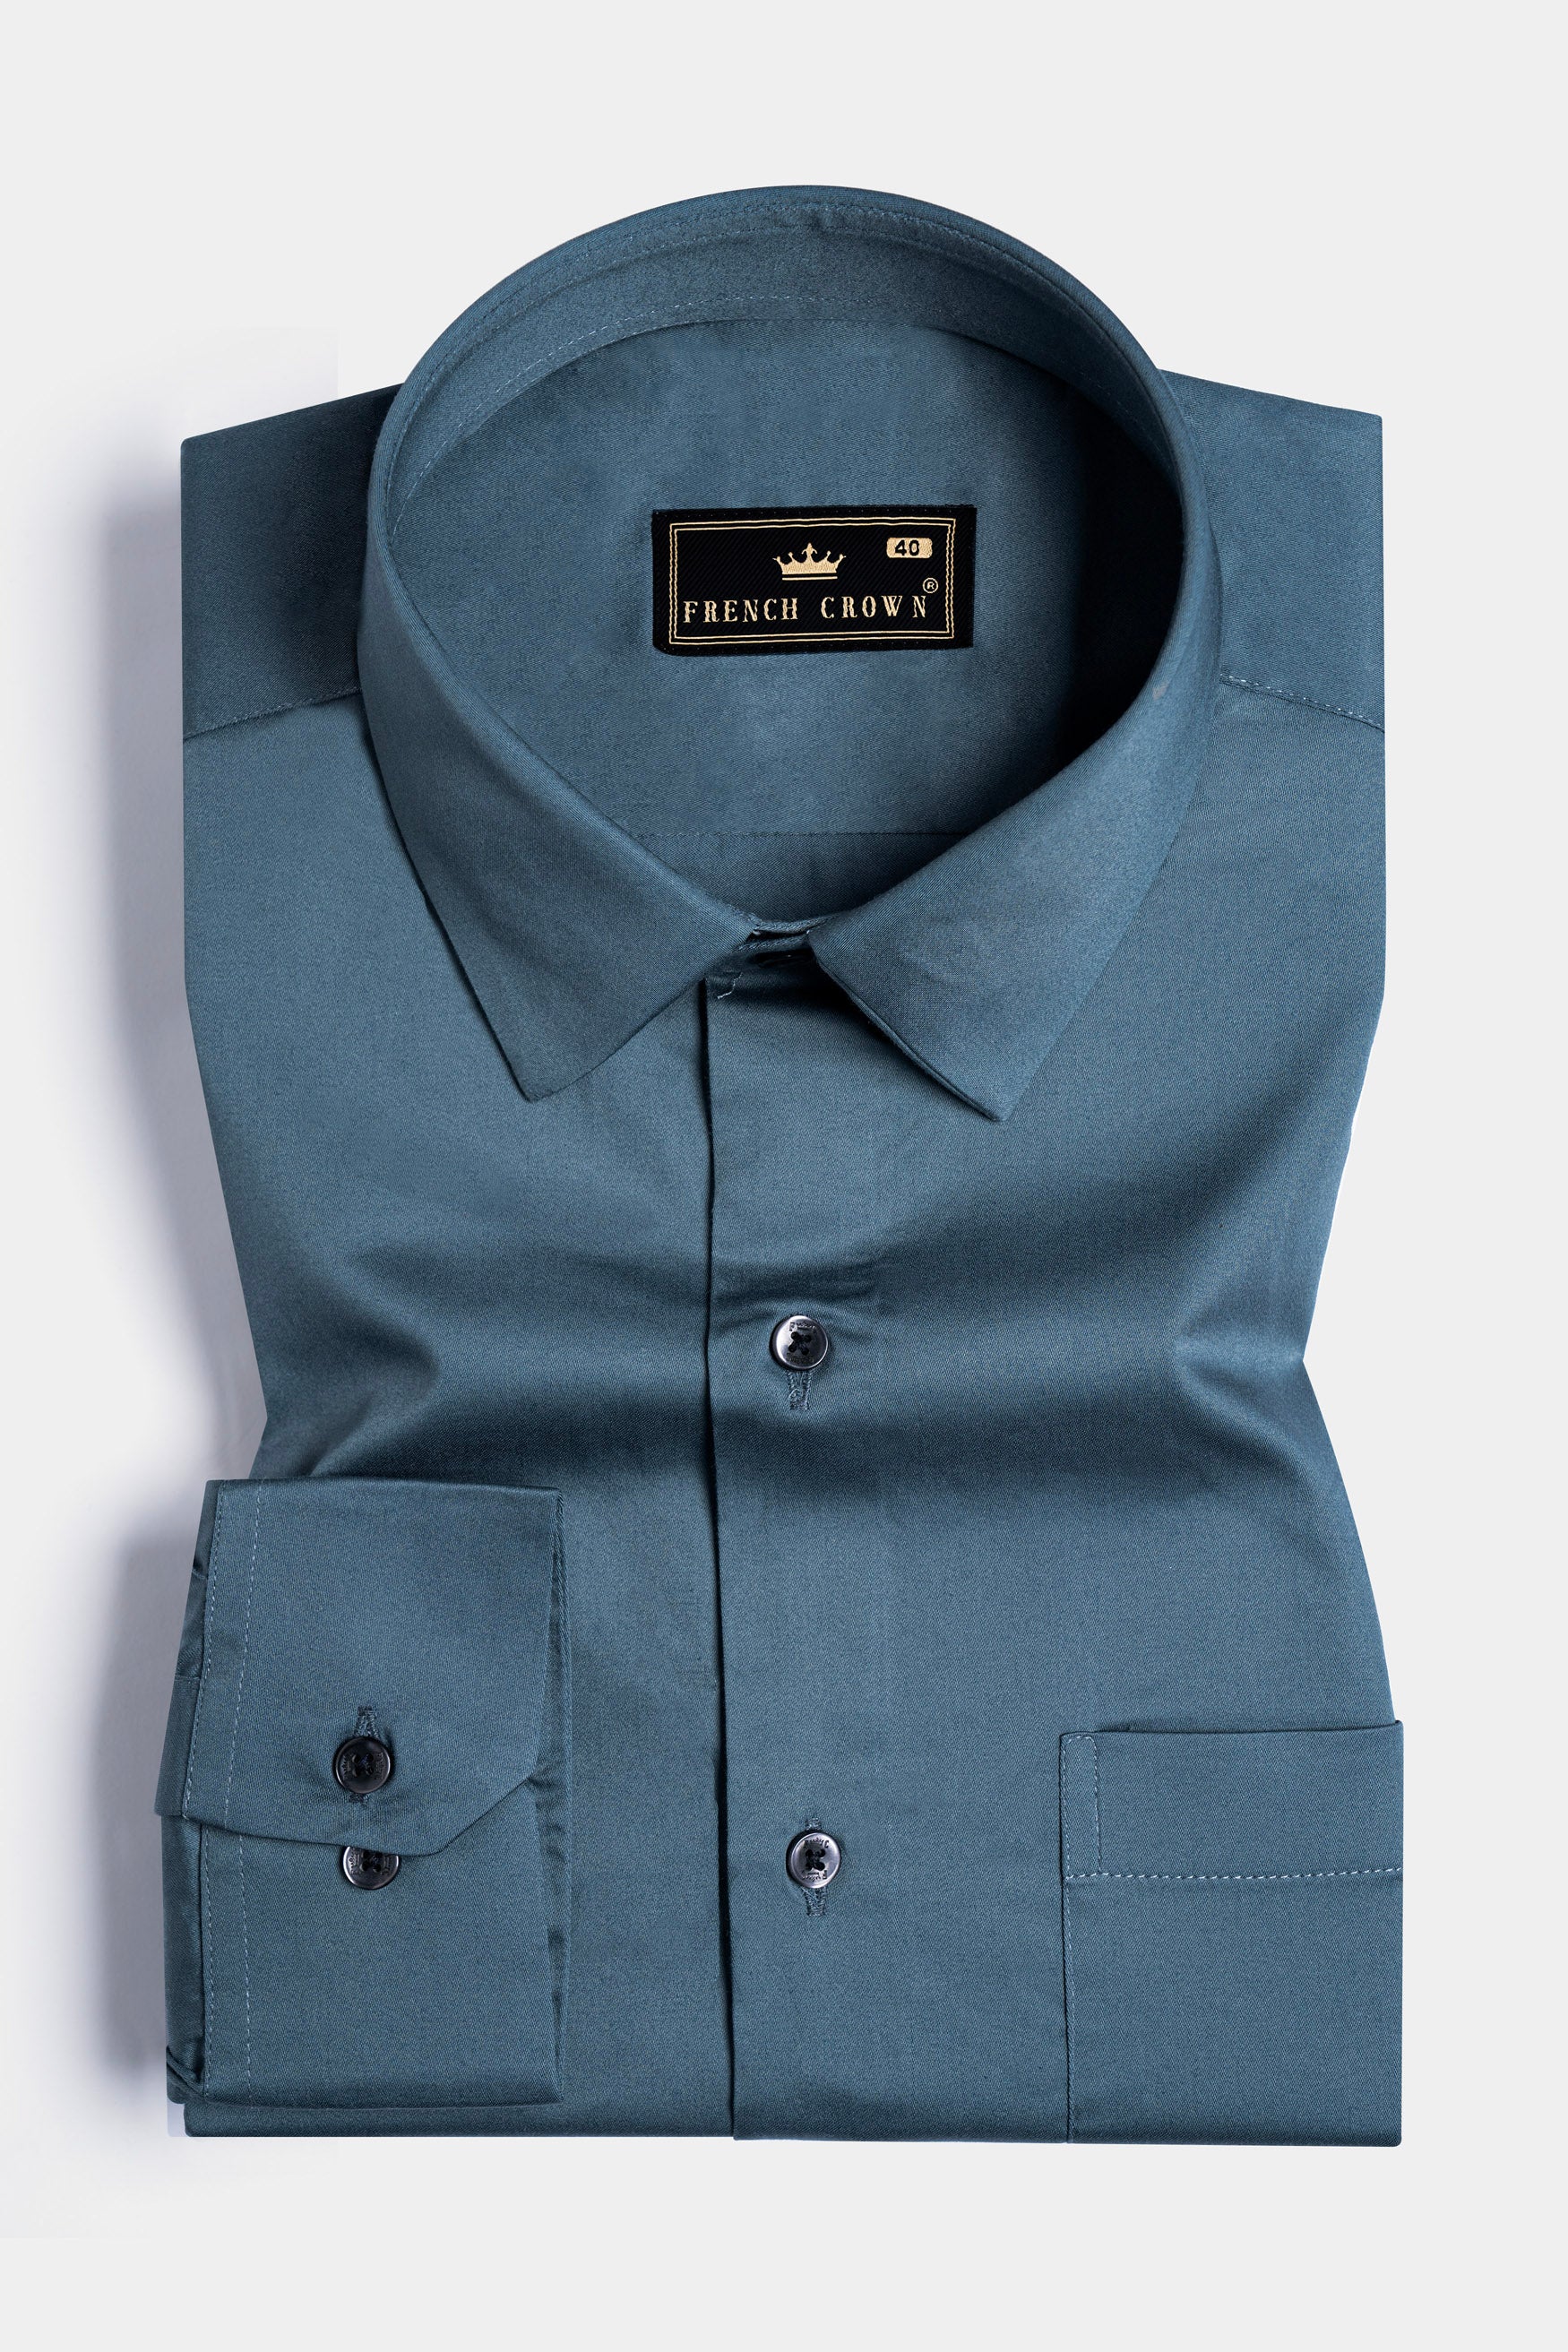 Fiord Blue Subtle Sheen Super Soft Premium Cotton Shirt